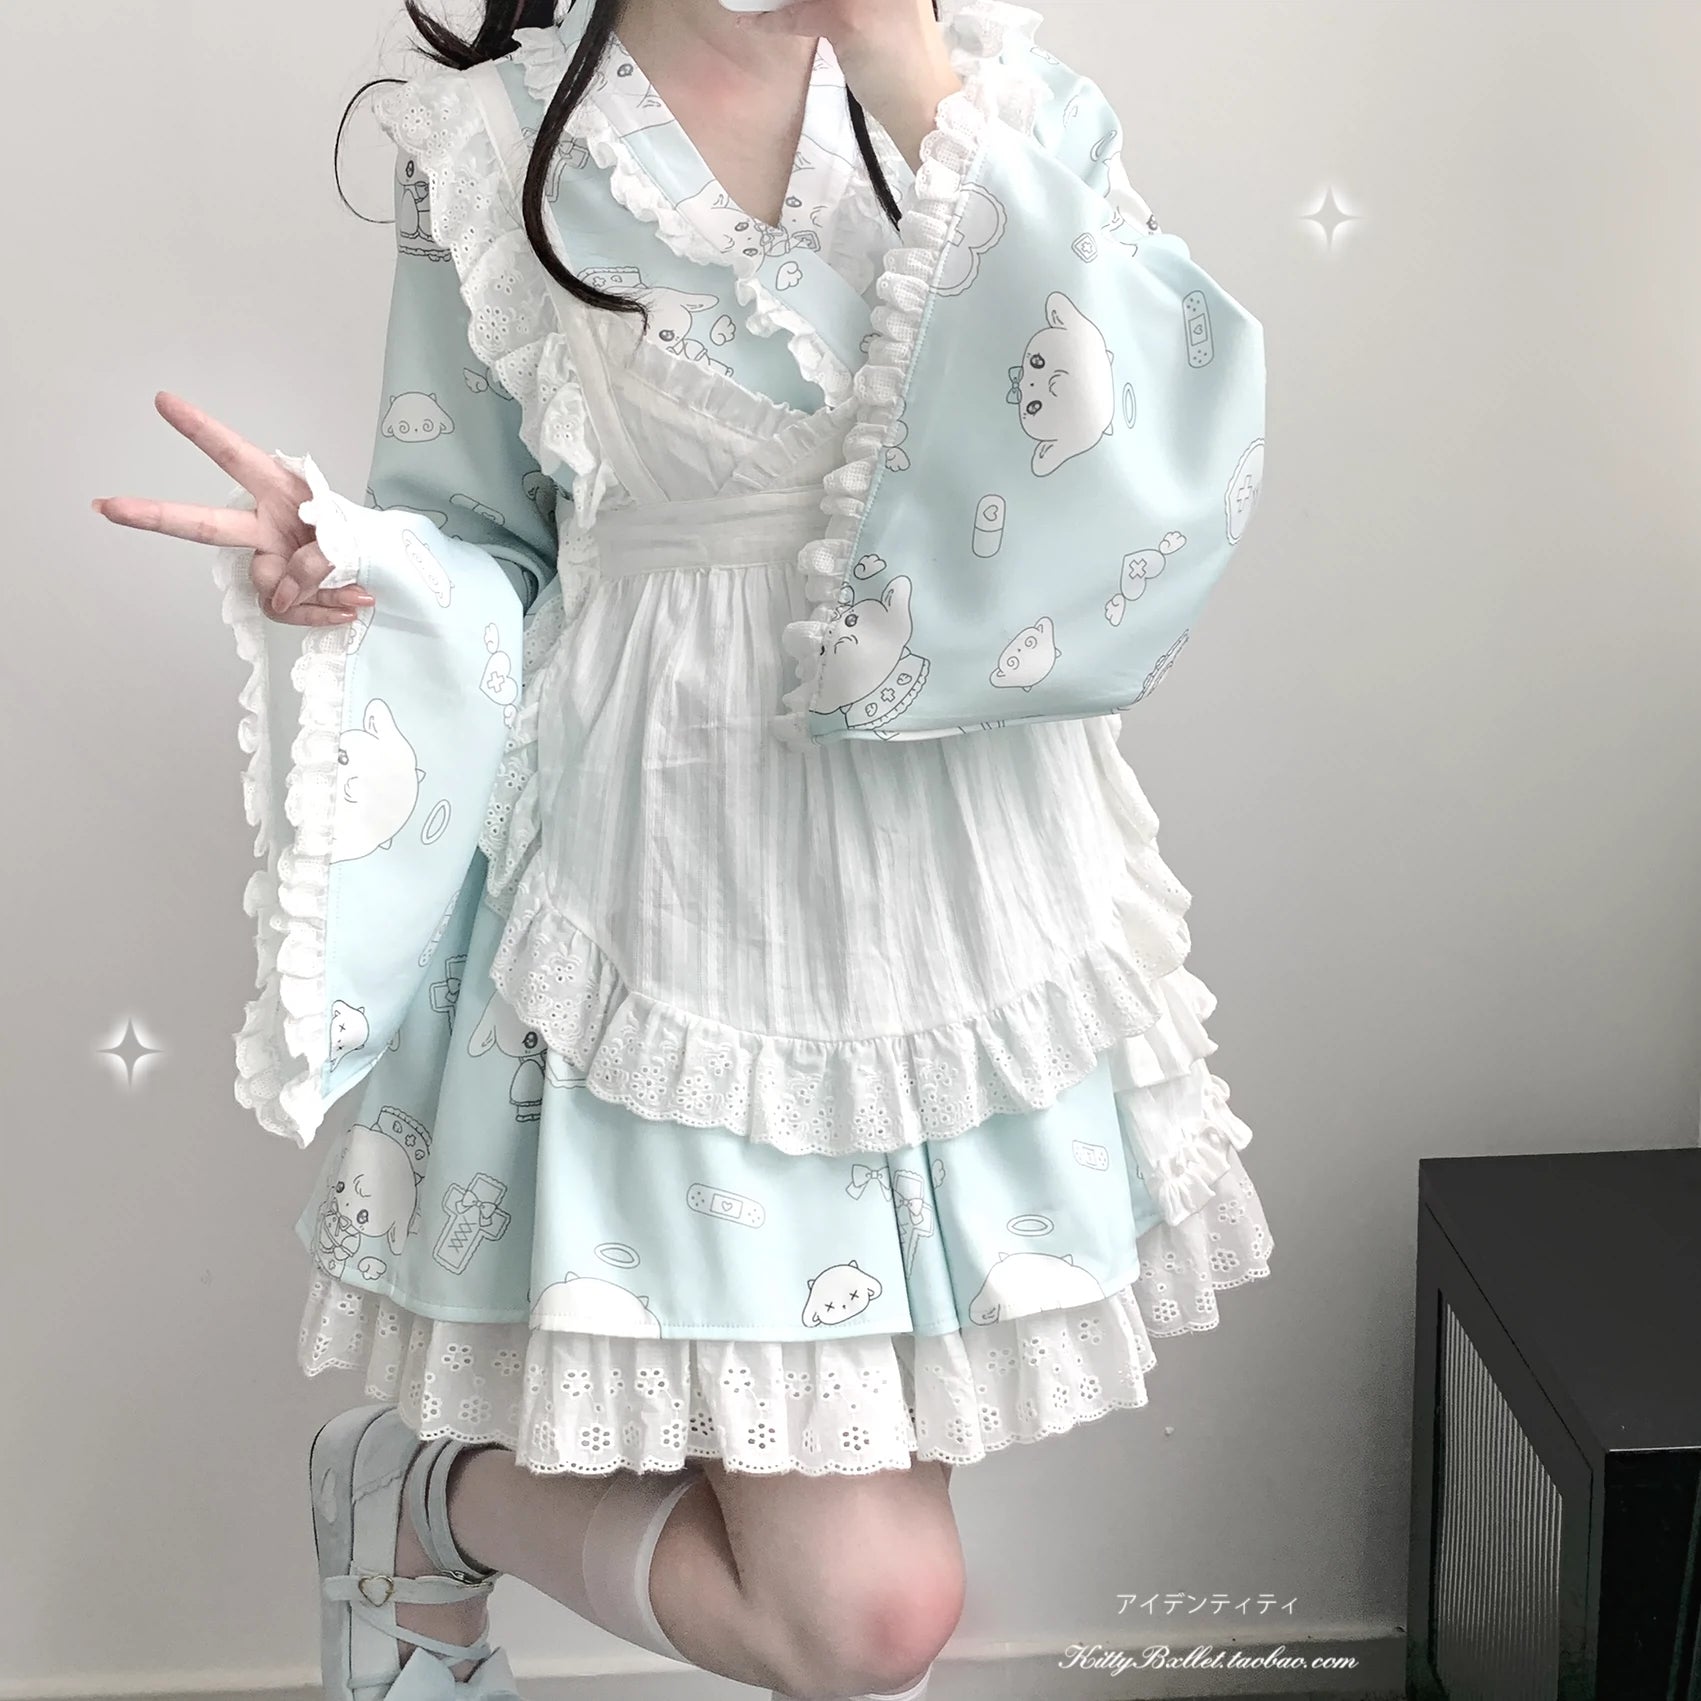 Tenshi Kaiwai Patchwork Skirt Kimono Top White Apron Three-Piece Set 36786:536648